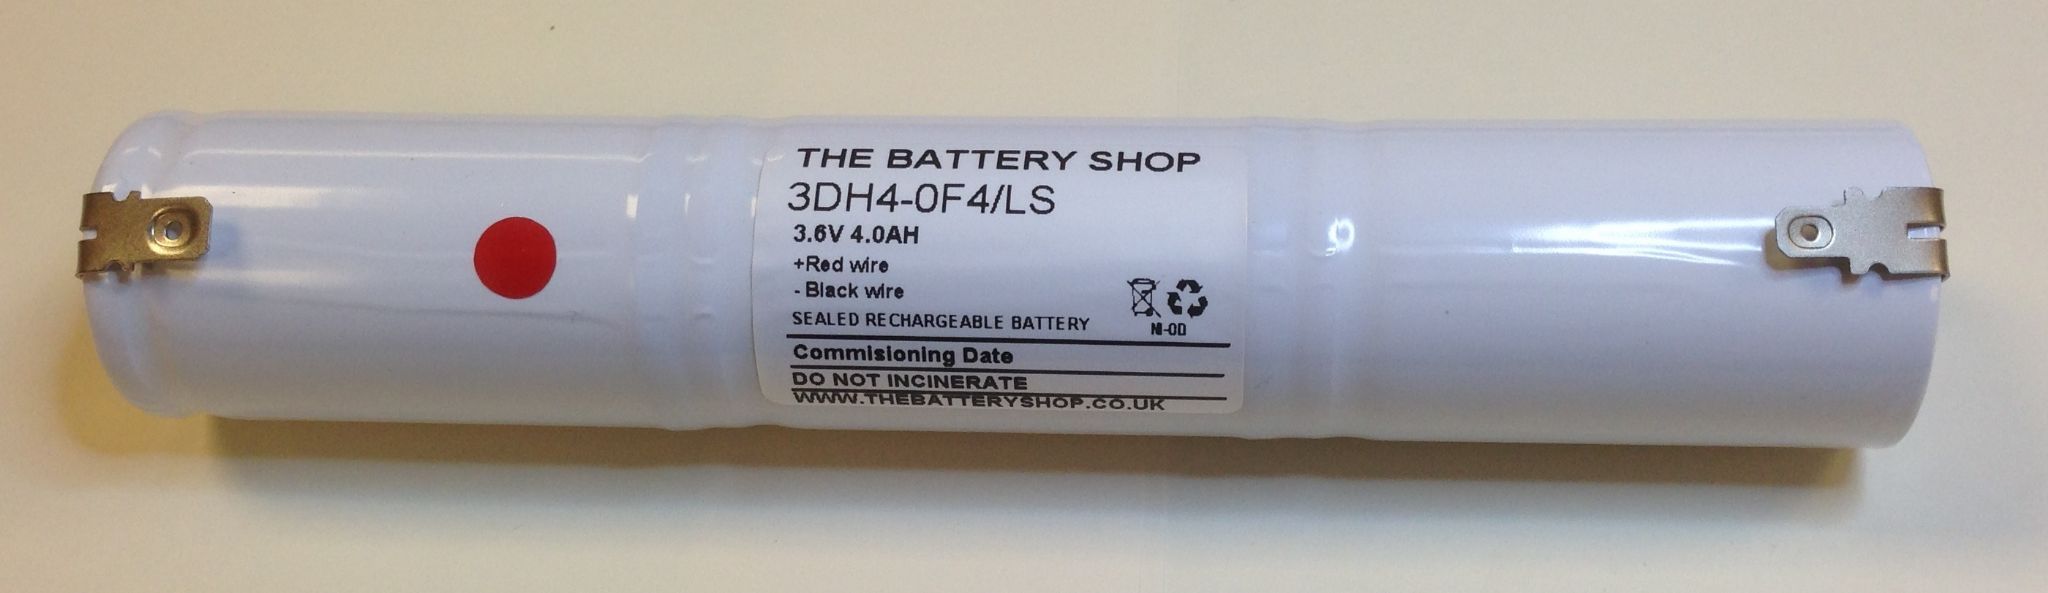 TBS 3DH4-0F4/LS 3.6v 4.0Ah Ni-Cd Emergency Battery Pack (B644, B167/34, B576, B776) Emergency Lighting Batteries The Lamp Company - Easy Control Gear